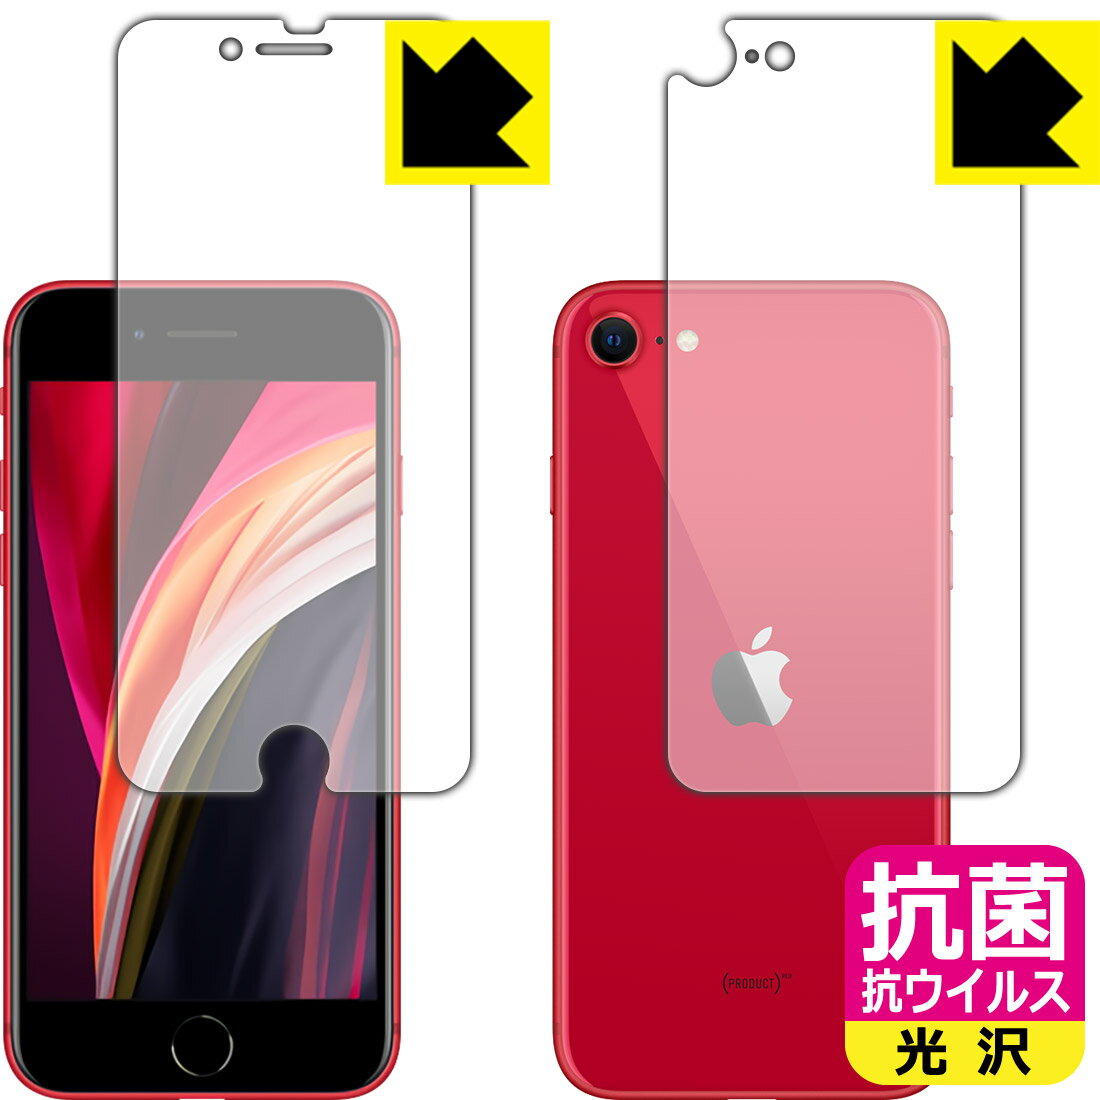 抗菌 抗ウイルス【光沢】保護フィルム iPhone SE (第2世代) 両面セット 【J型】 日本製 自社製造直販